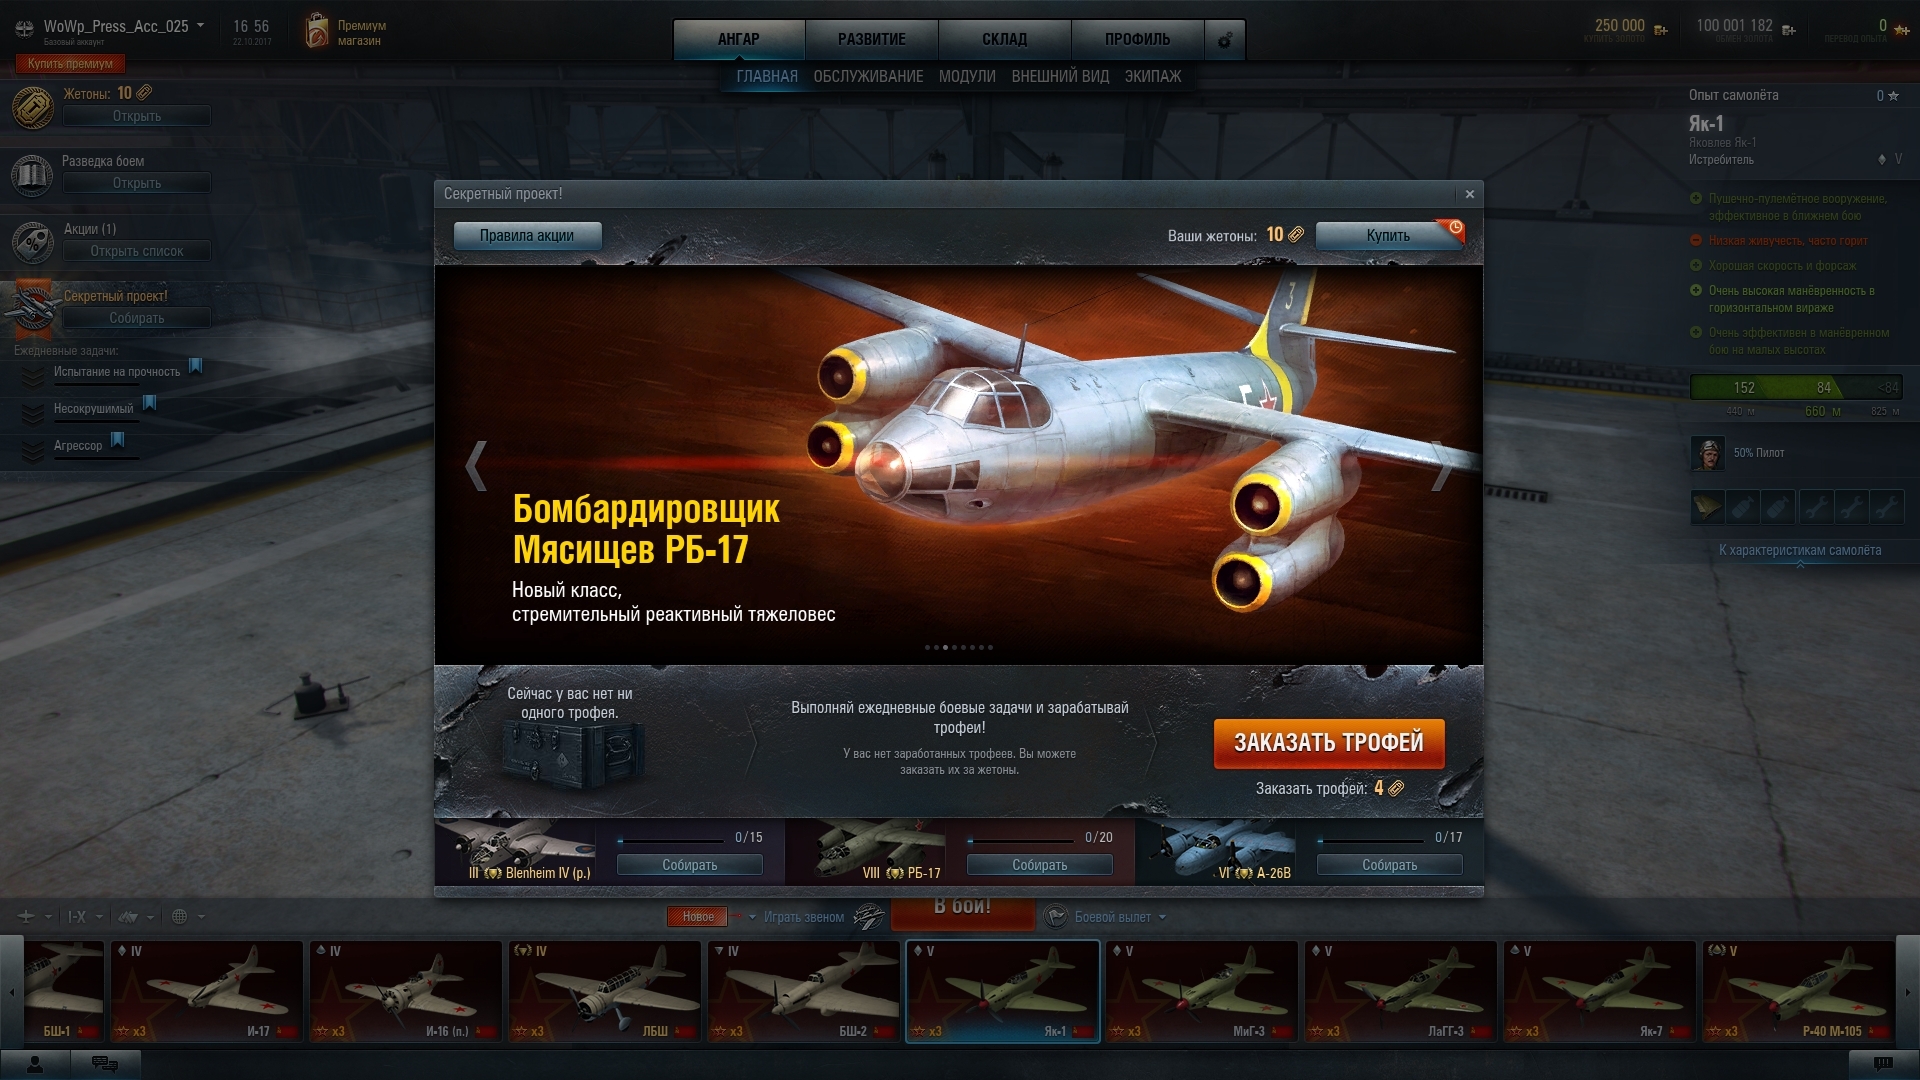 Скриншот из игры World of Warplanes 2.0 под номером 1